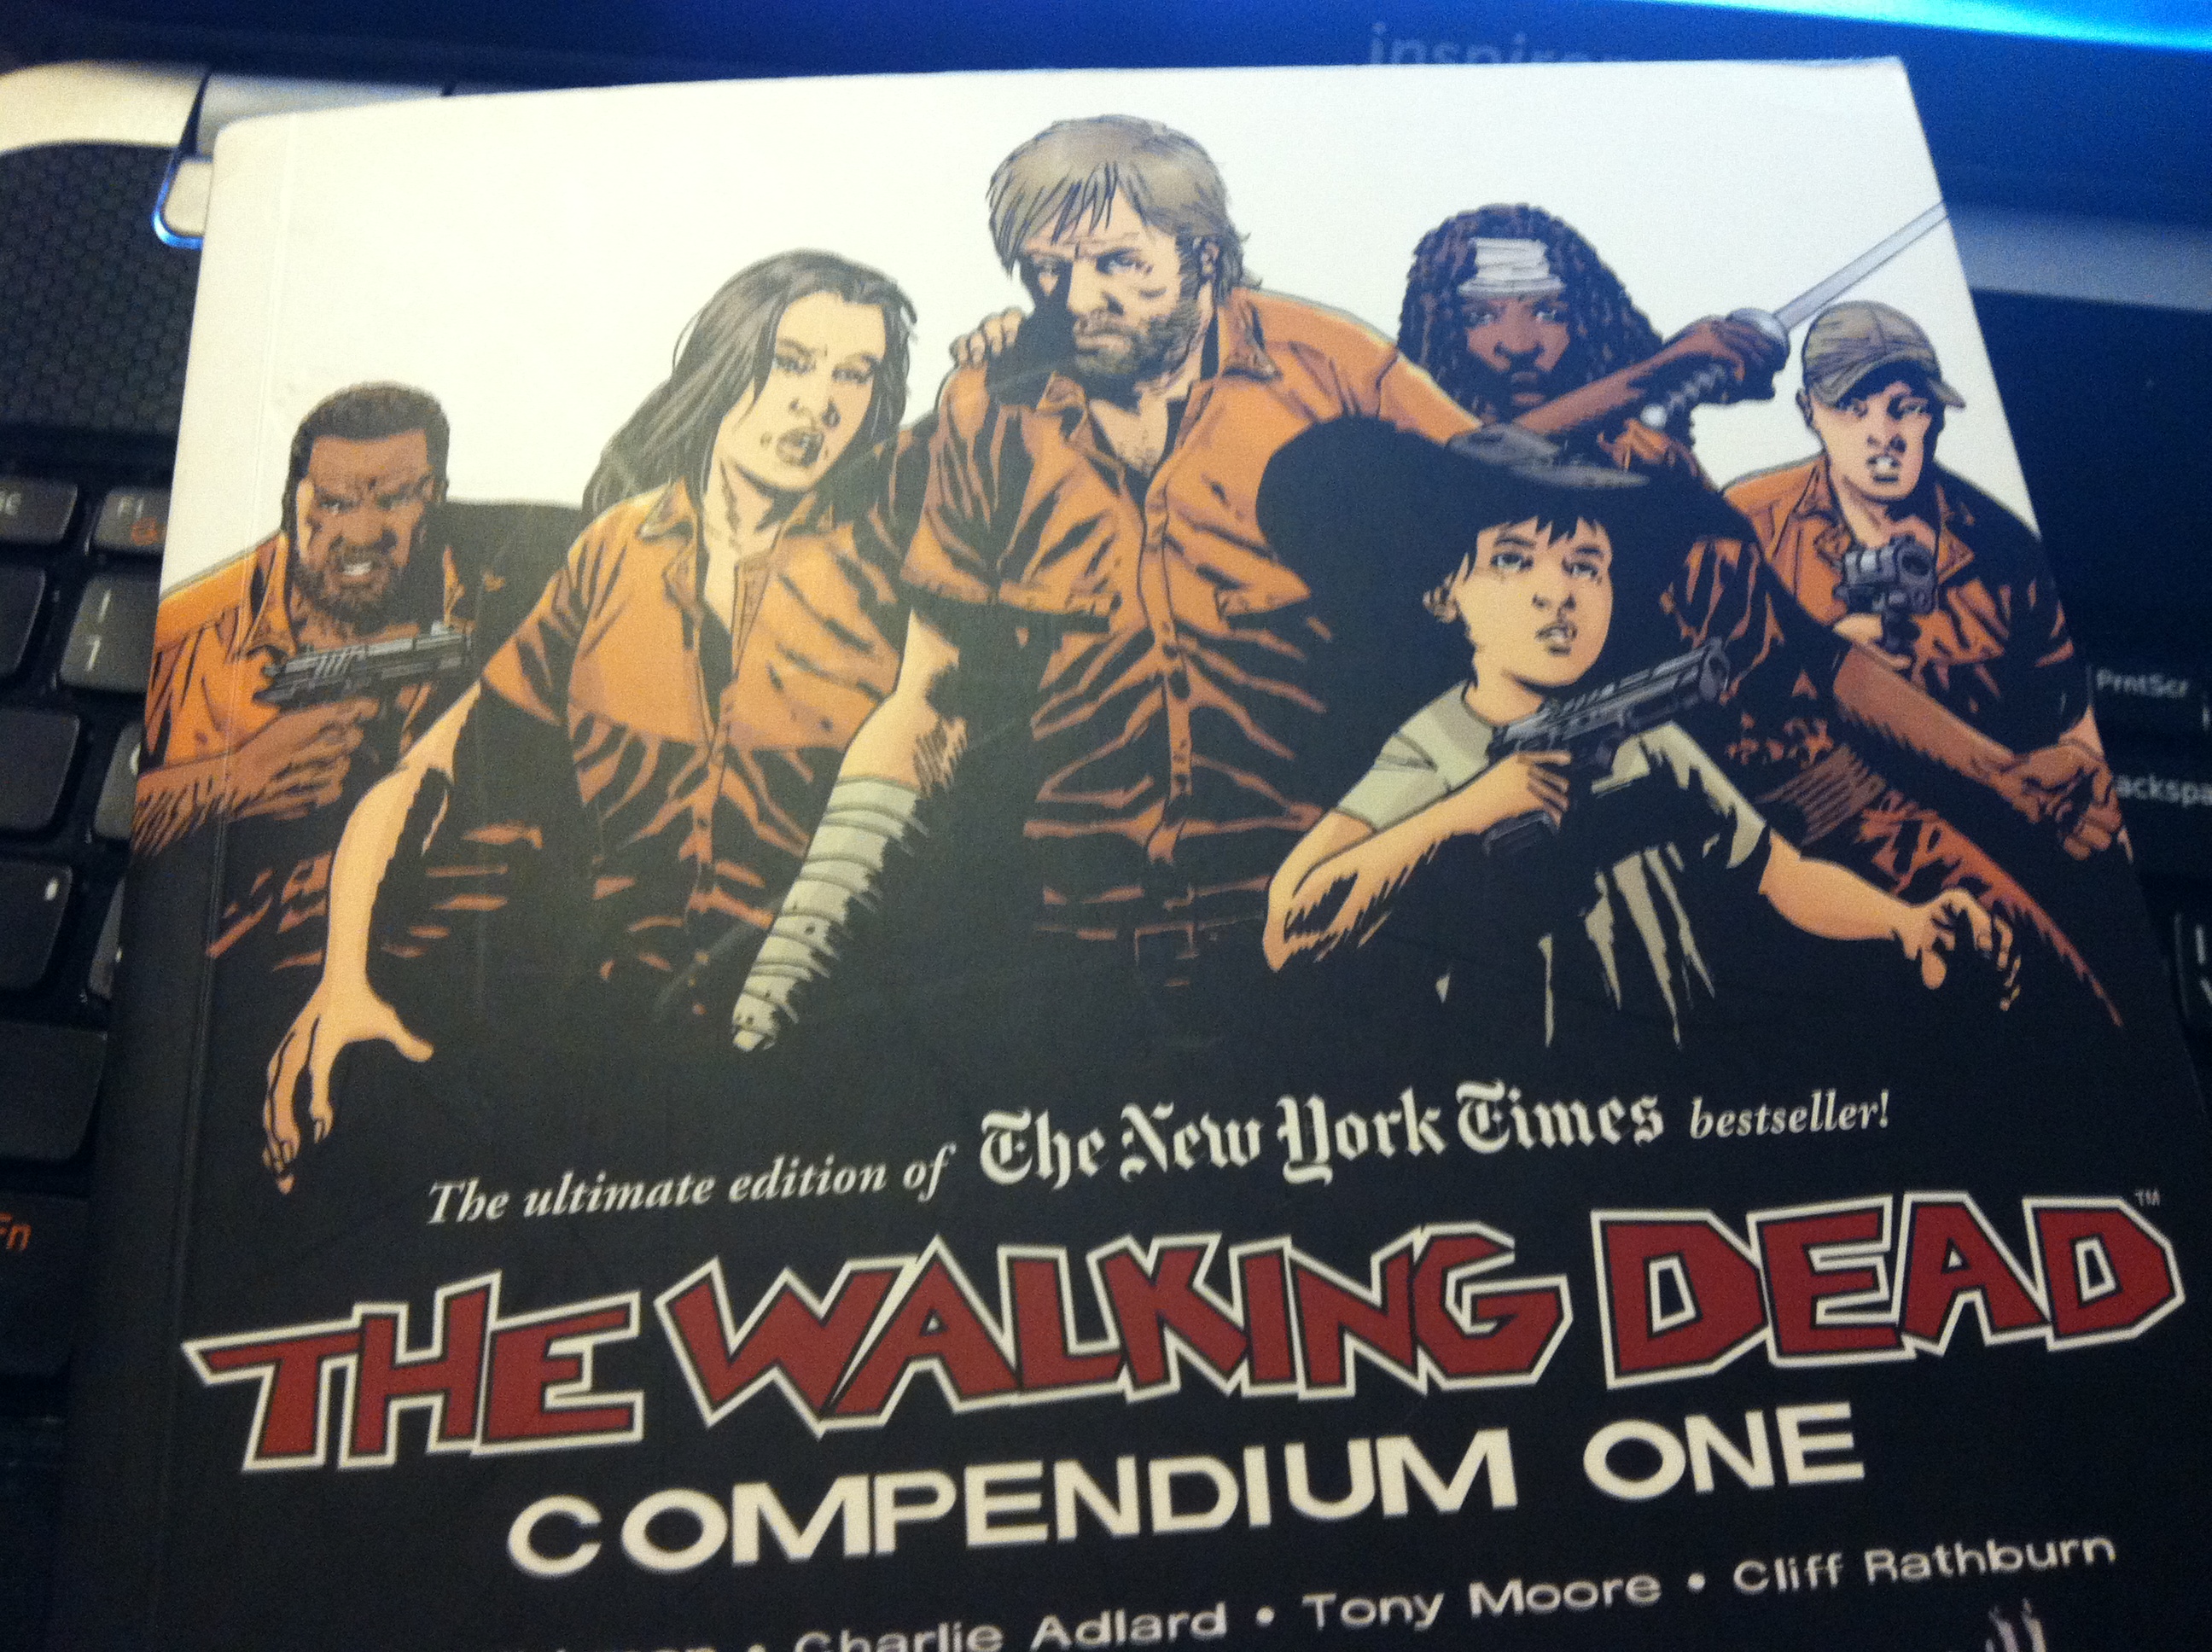 the walking dead comics compendium 1